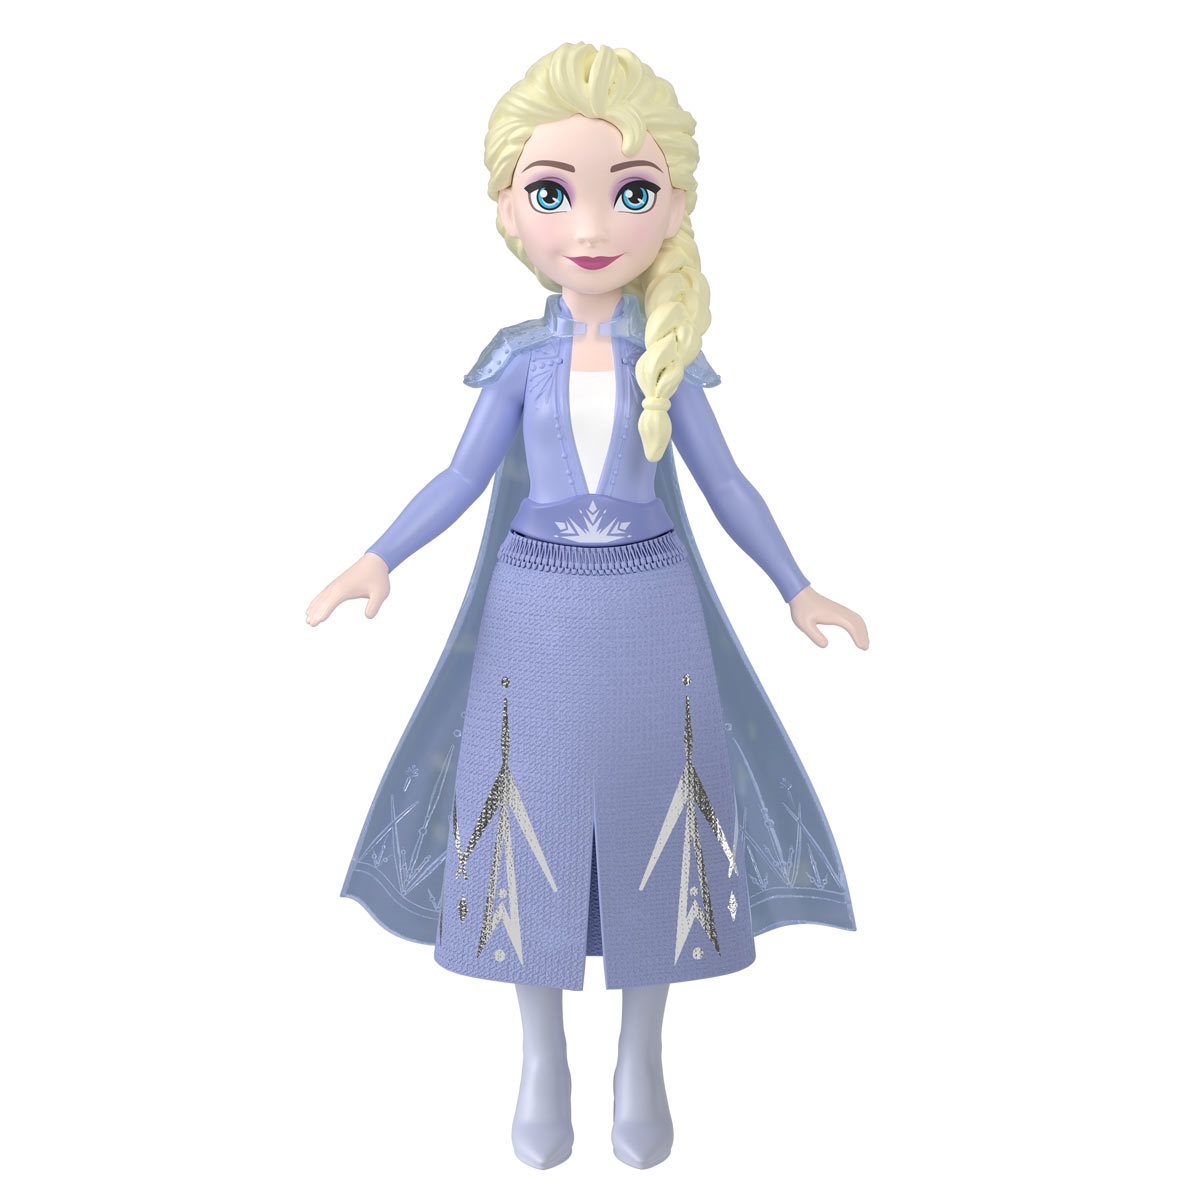 Frozen 2 Doll Anna 27 cm